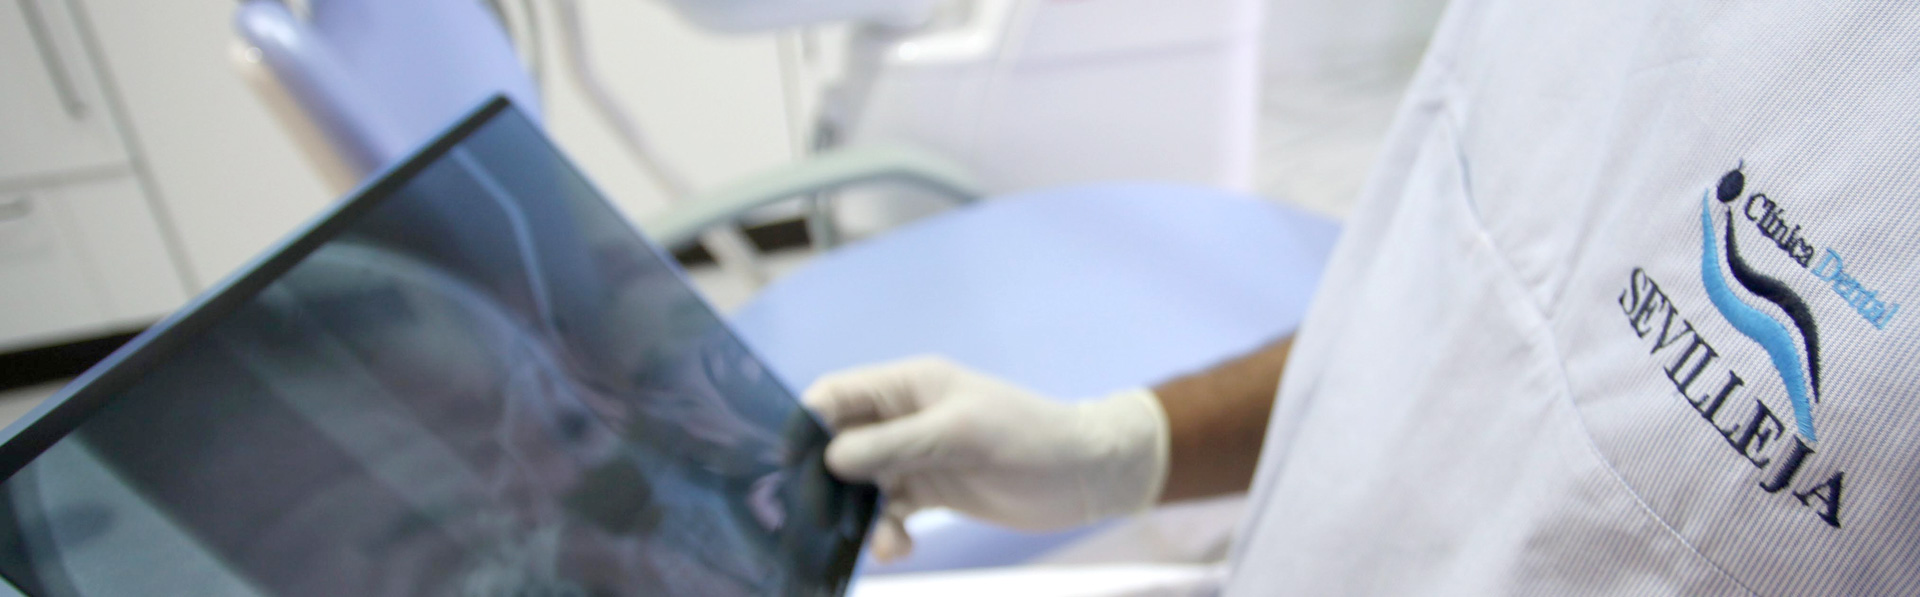 Sistema de radiografías dental en Talavera con una exposición 20 veces menor que la radiología tradicional